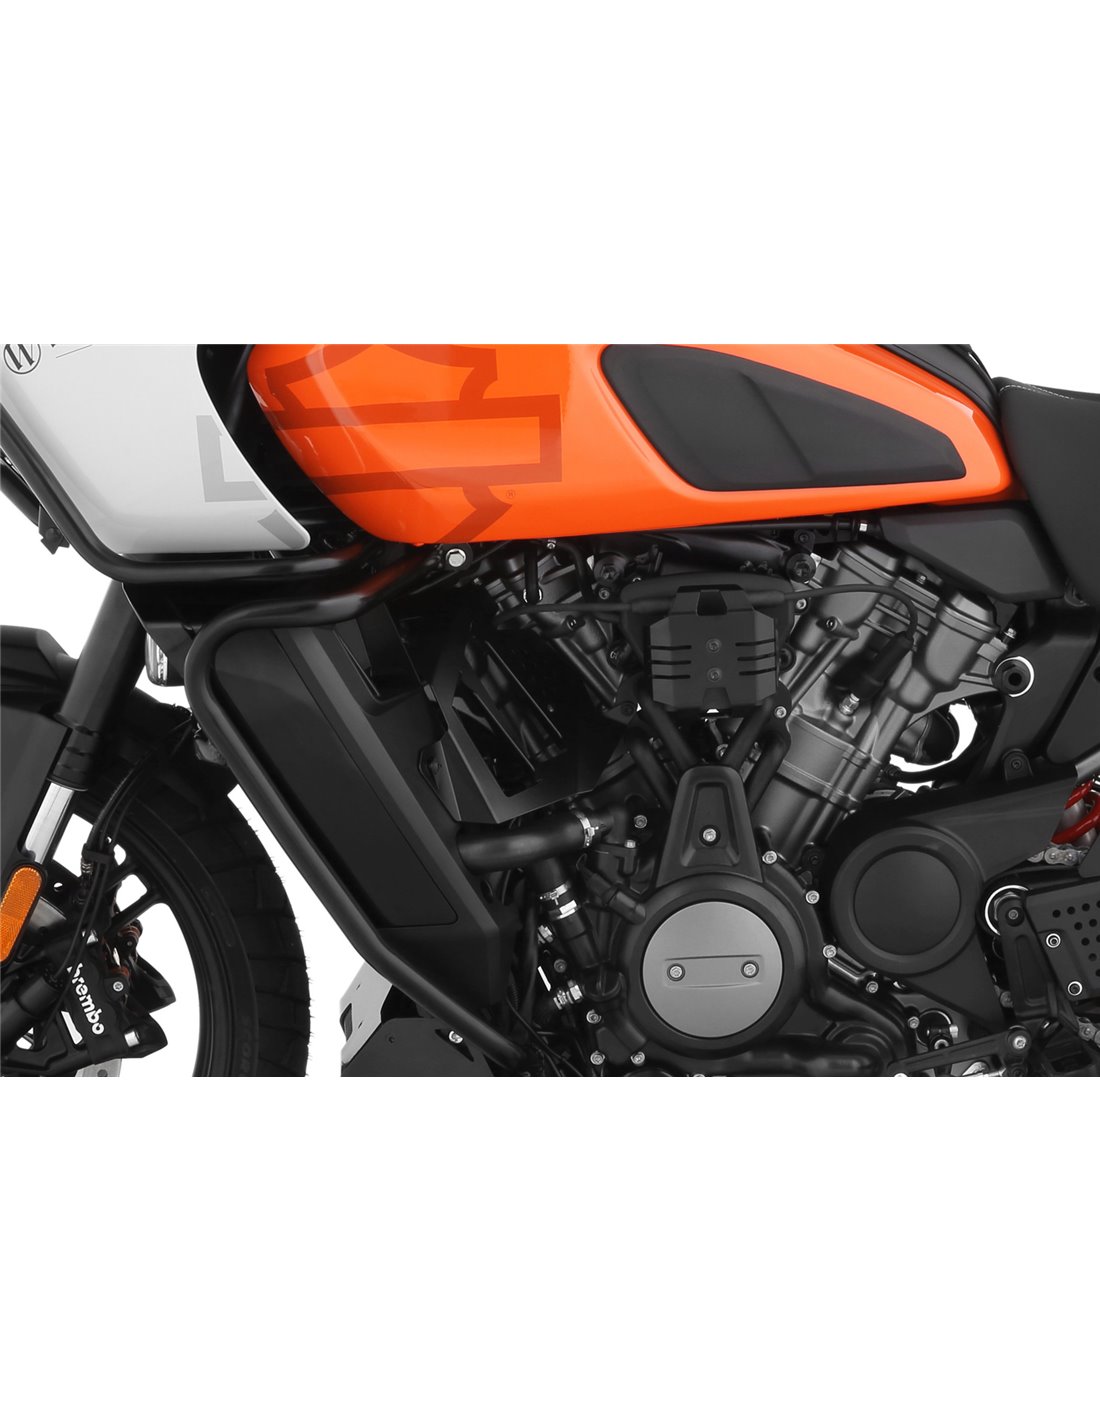 Accesorios para la Harley-Davidson Pan America de SW-MOTECH